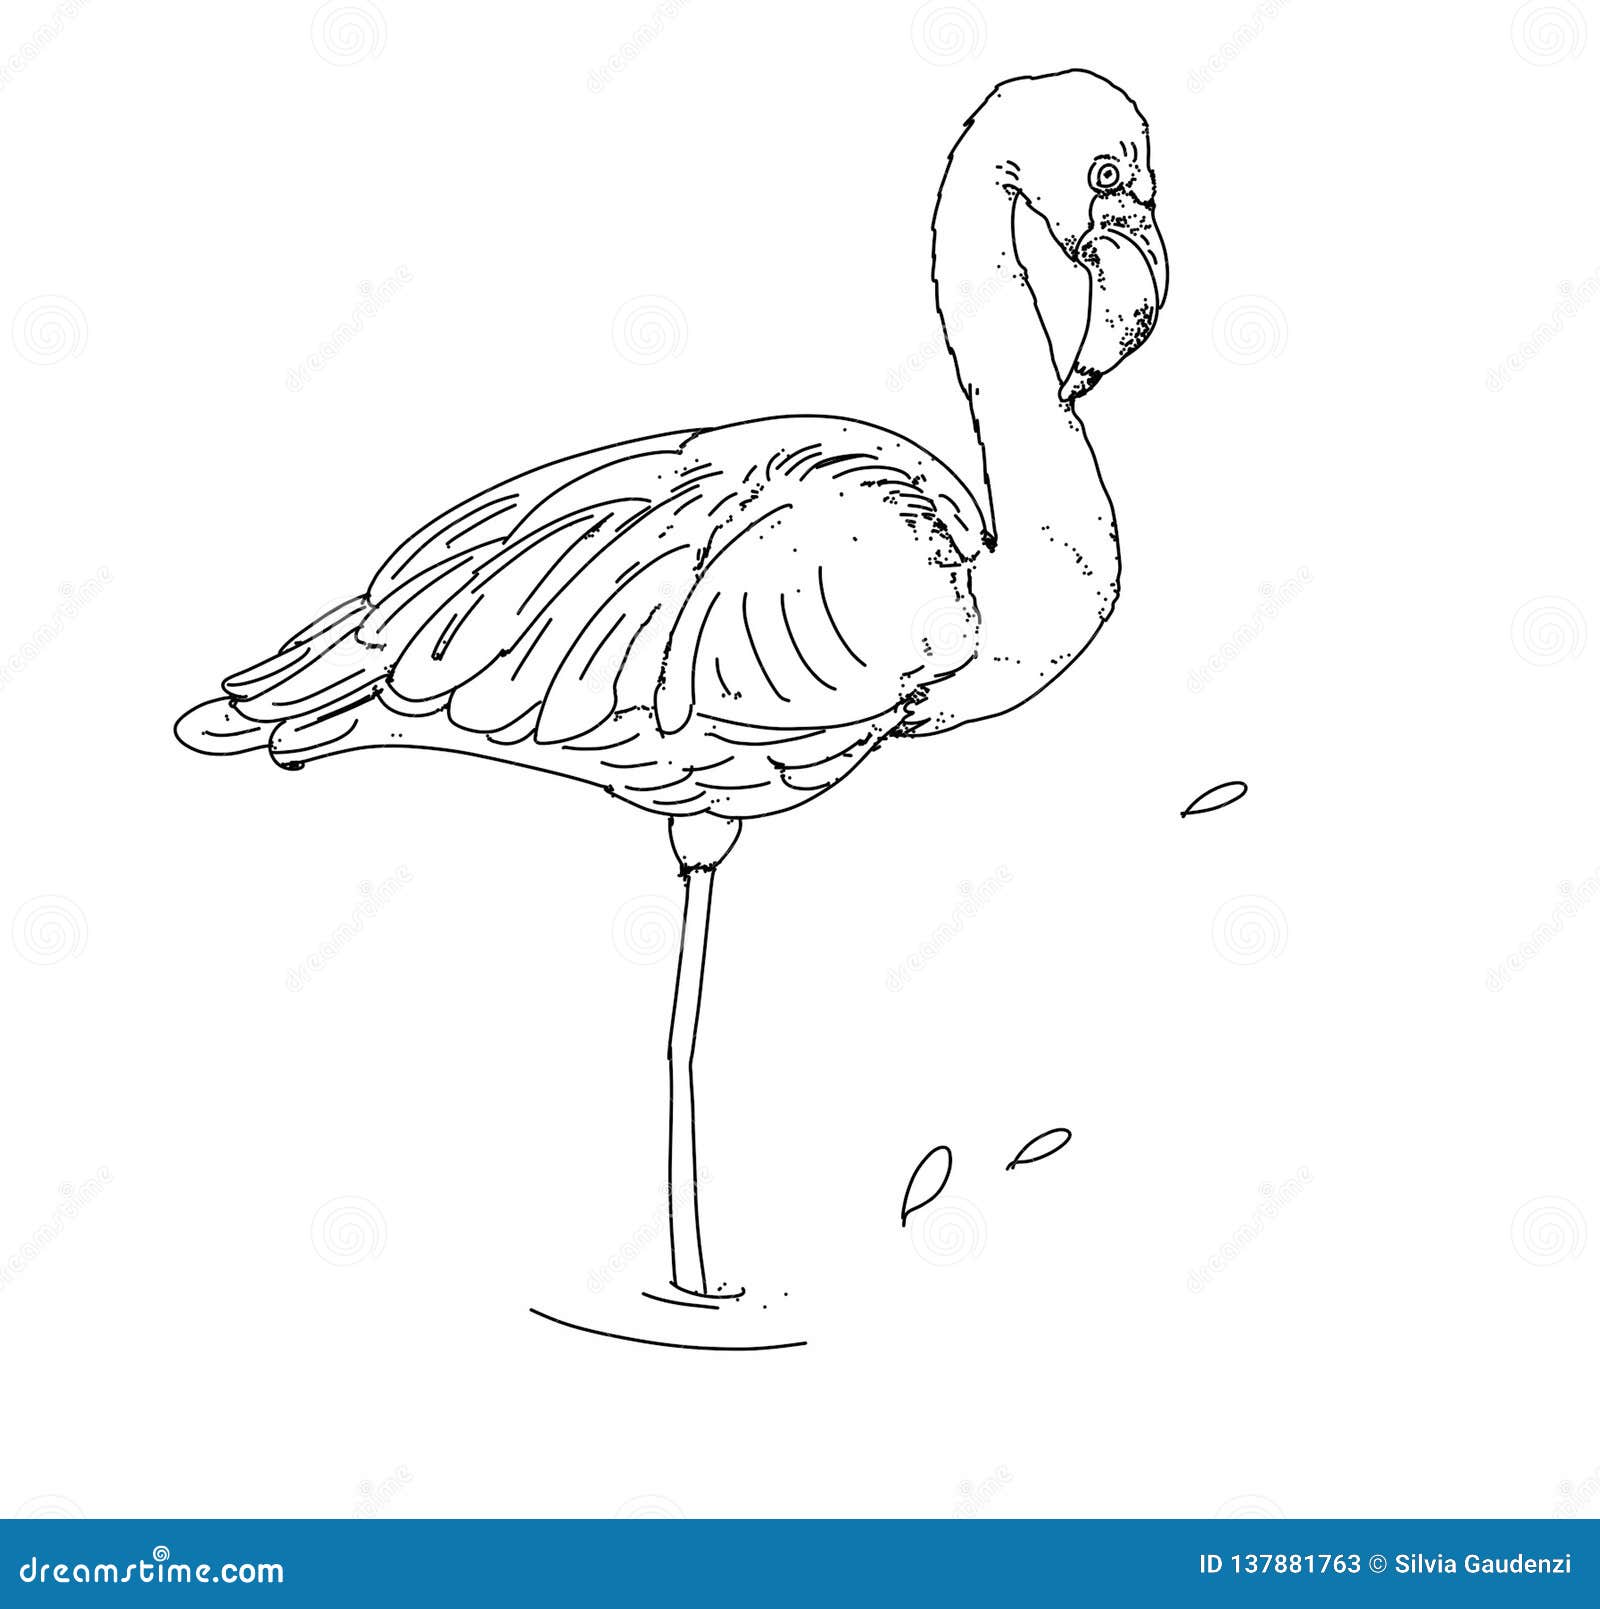 a pelican bird